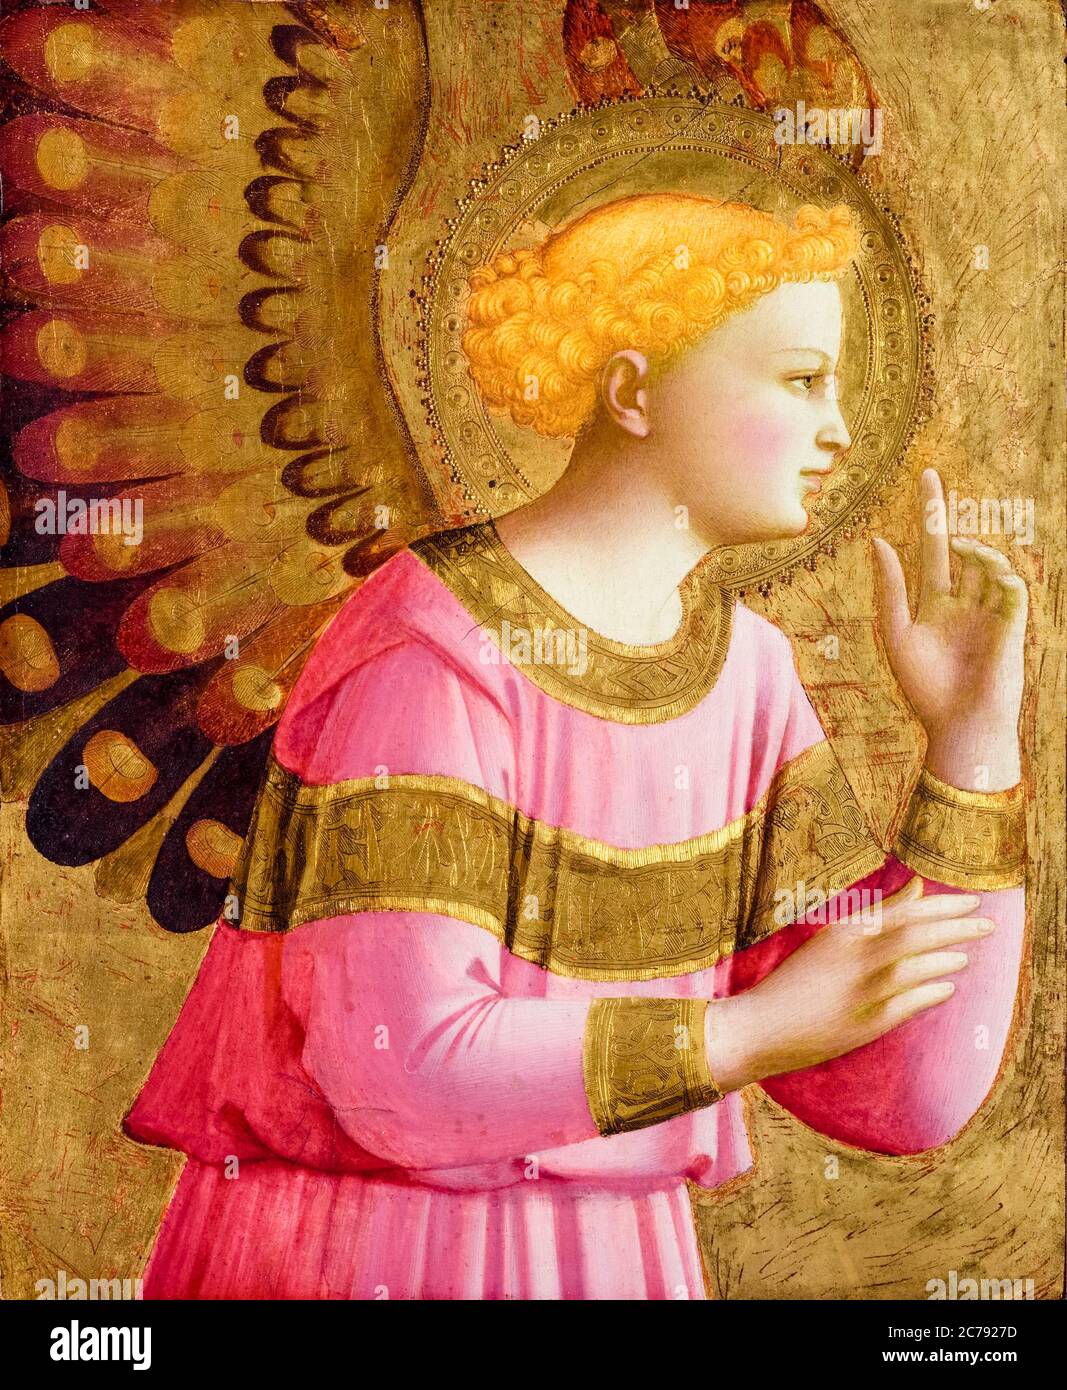 FRA Angelico, Ángel Anunciatorio, remanente retablo, pintura, 1450-1455 Foto de stock